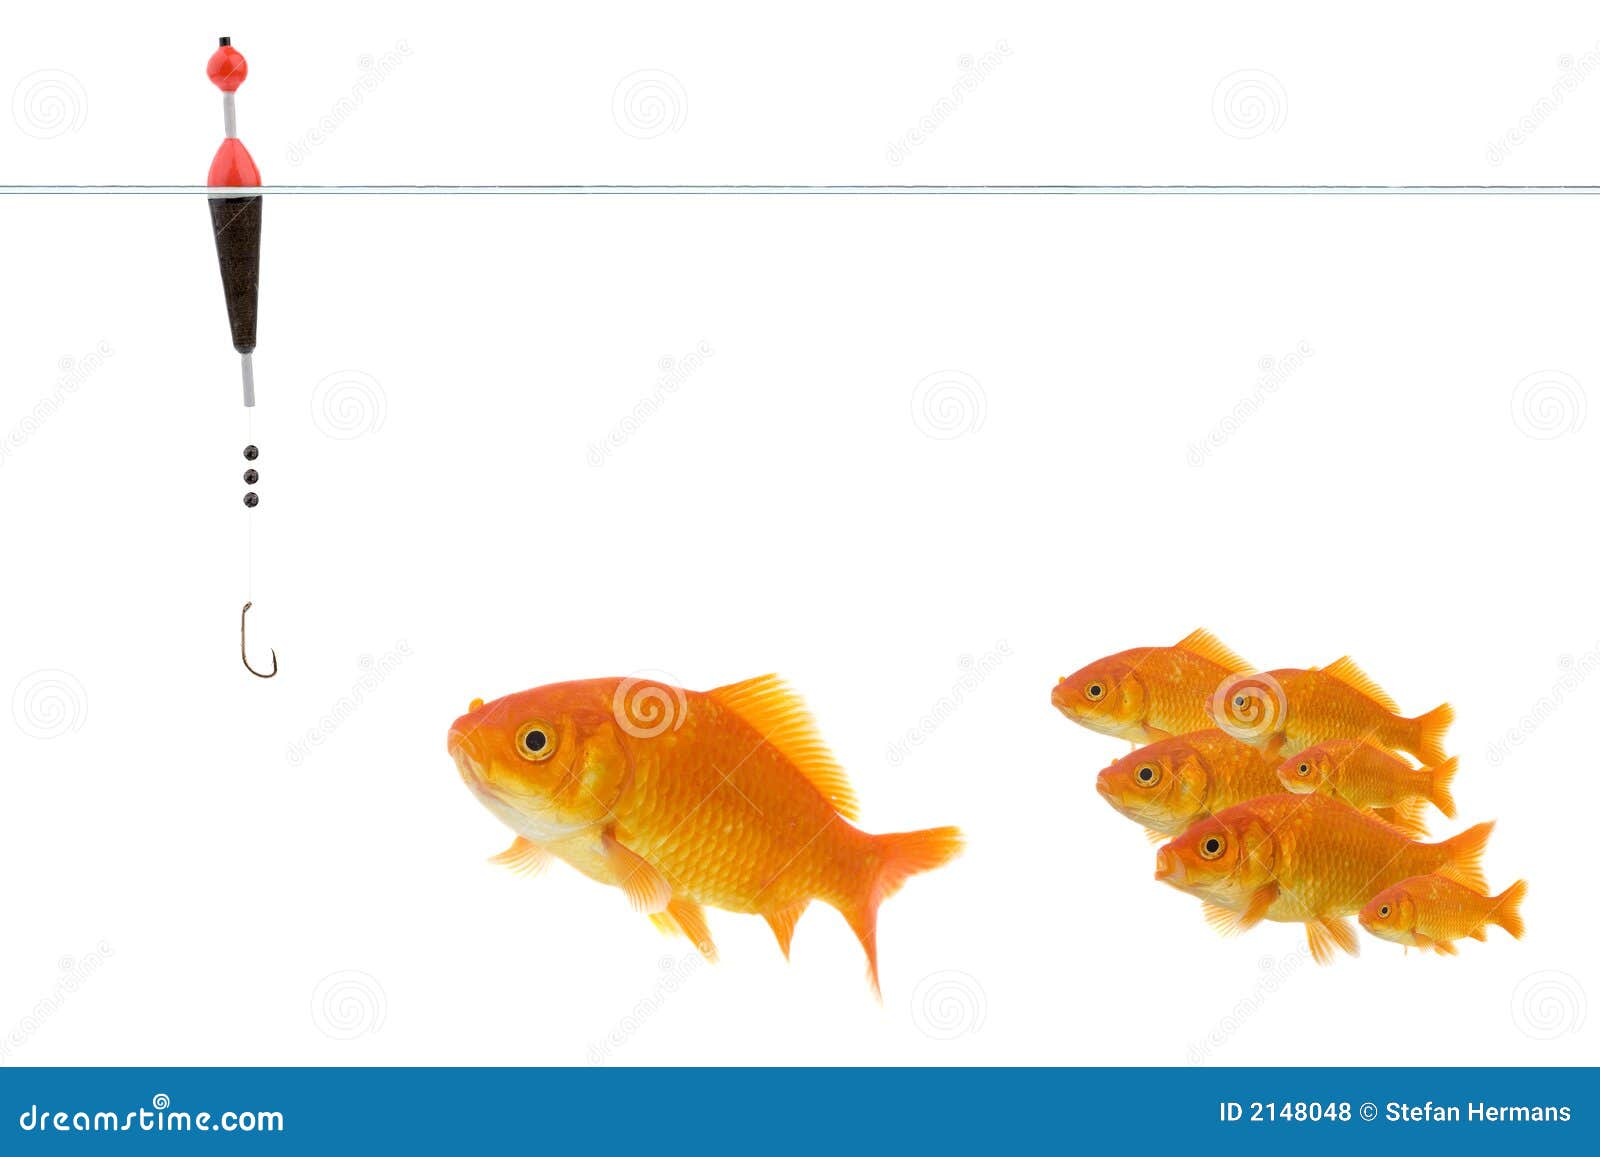 goldfish taking the bait